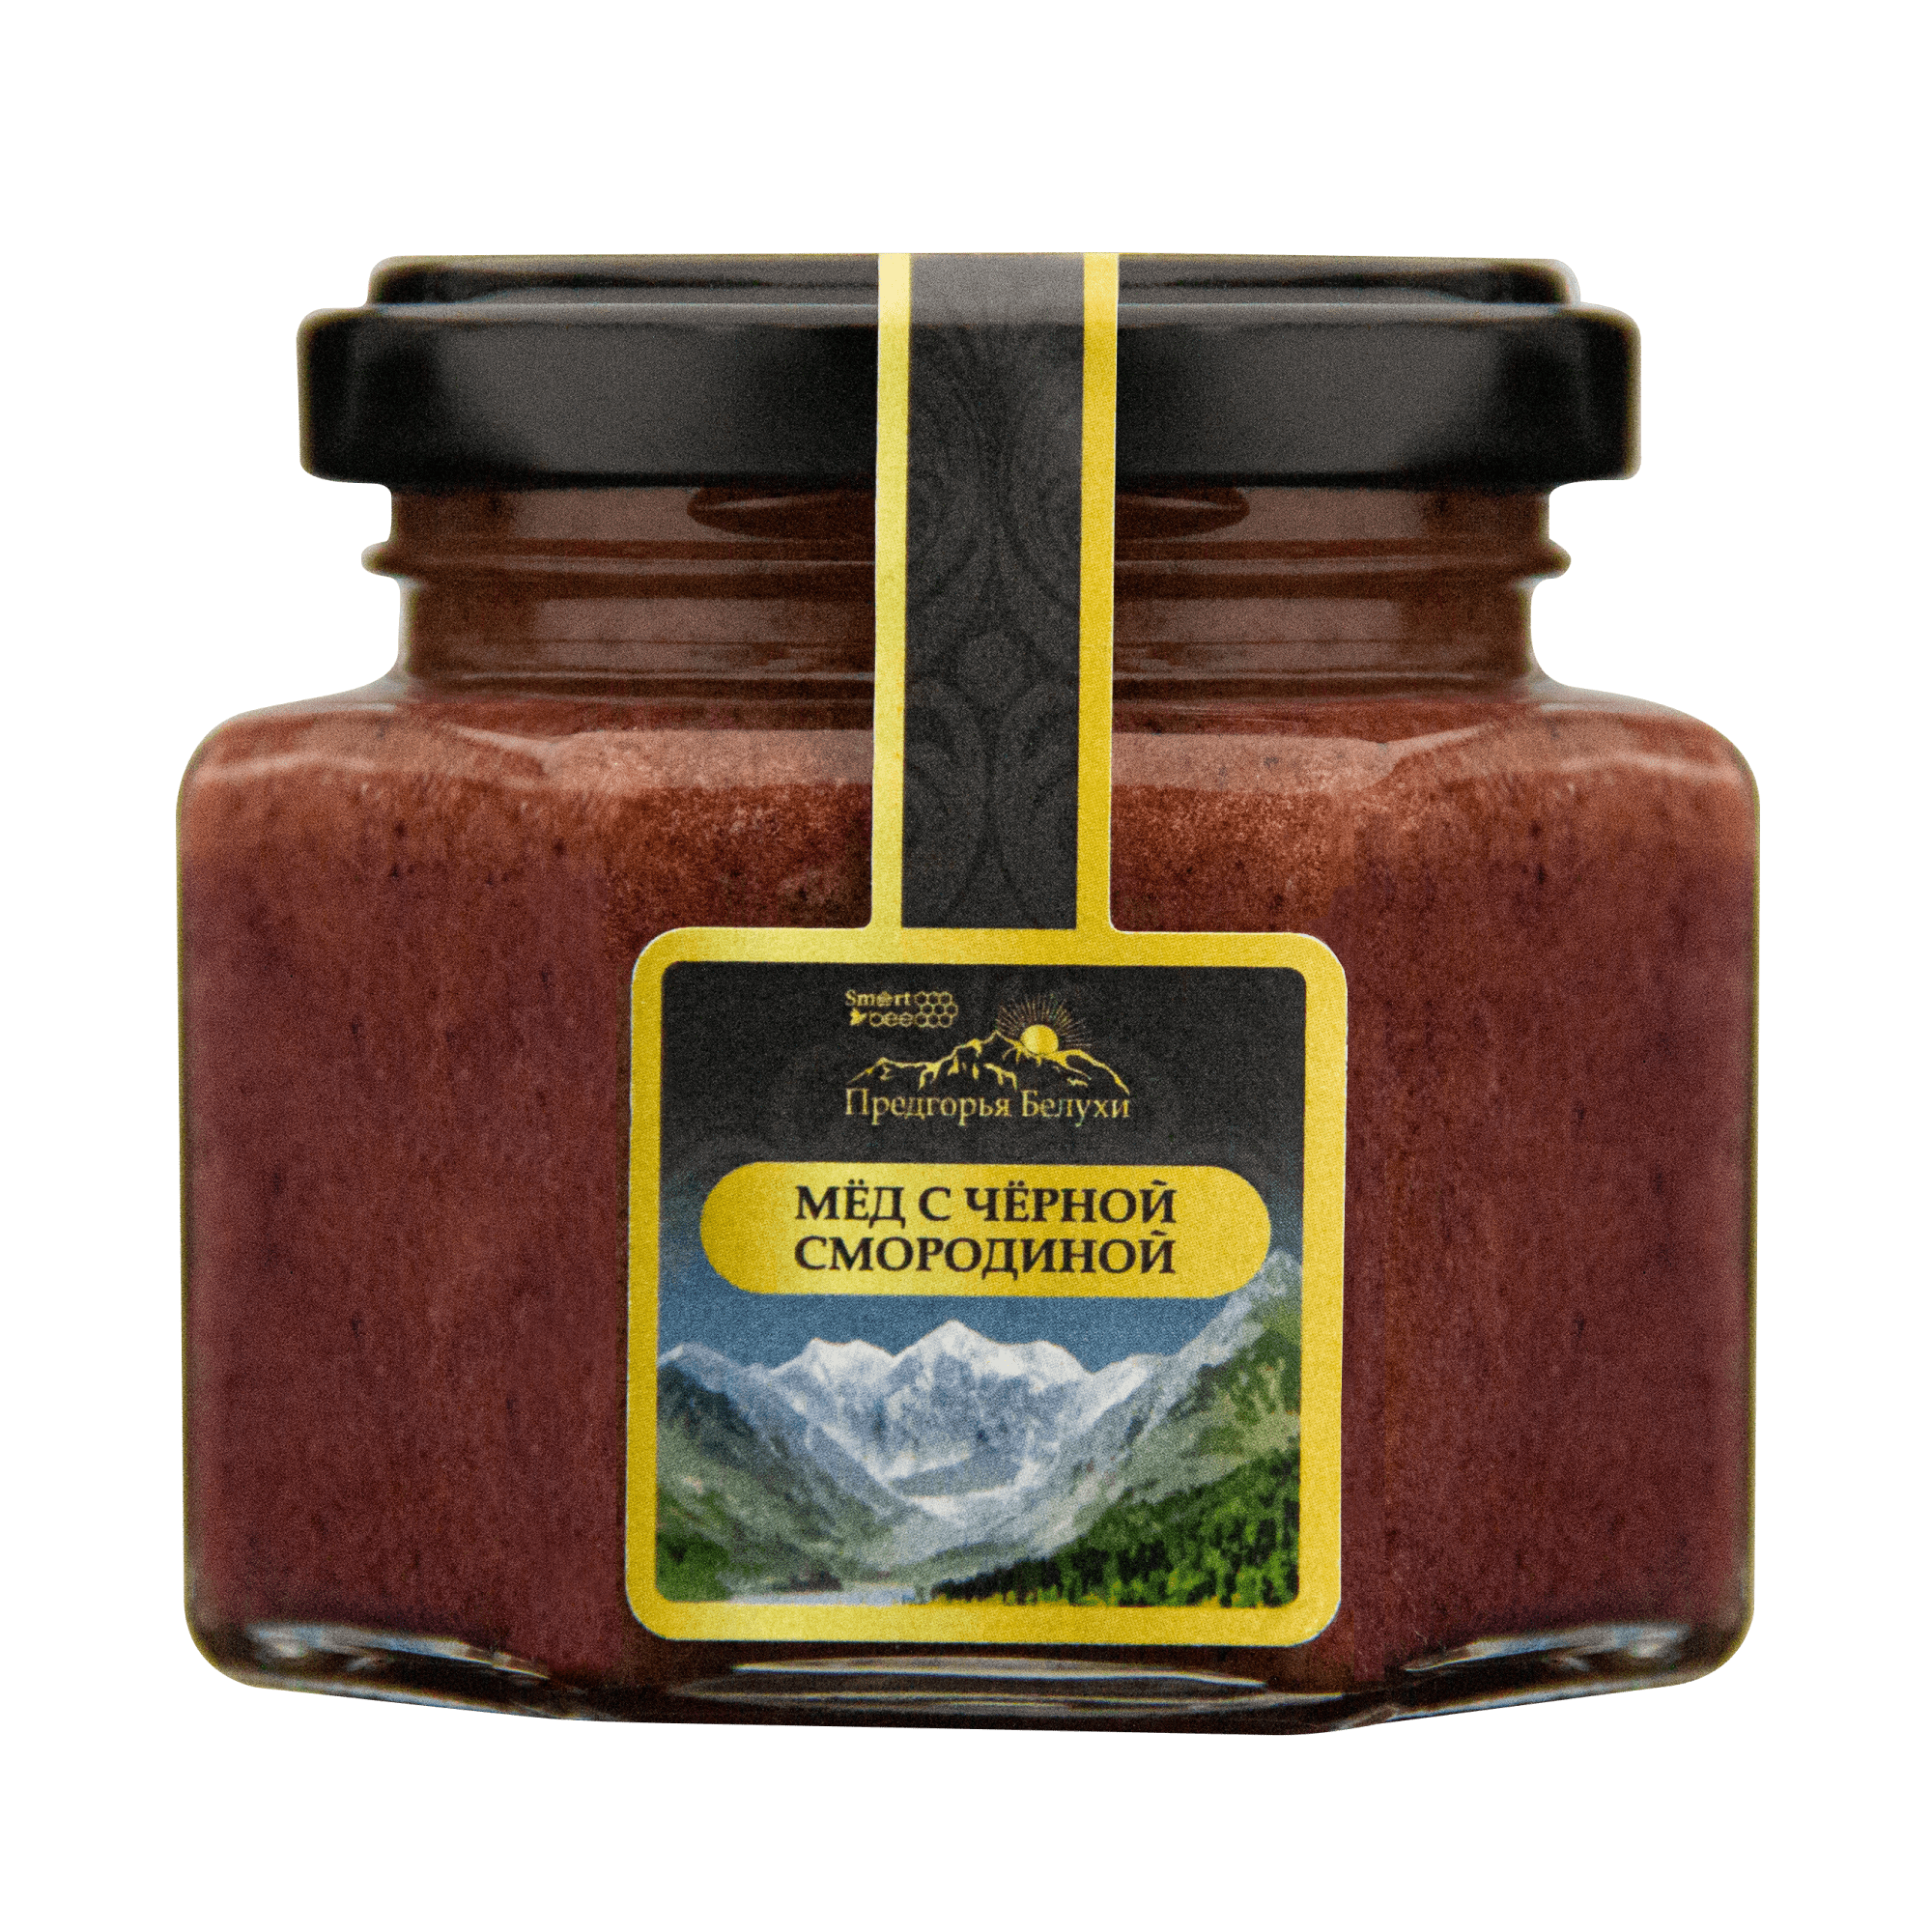 Мед горный натуральный разнотравье с черной смородиной 140 гр